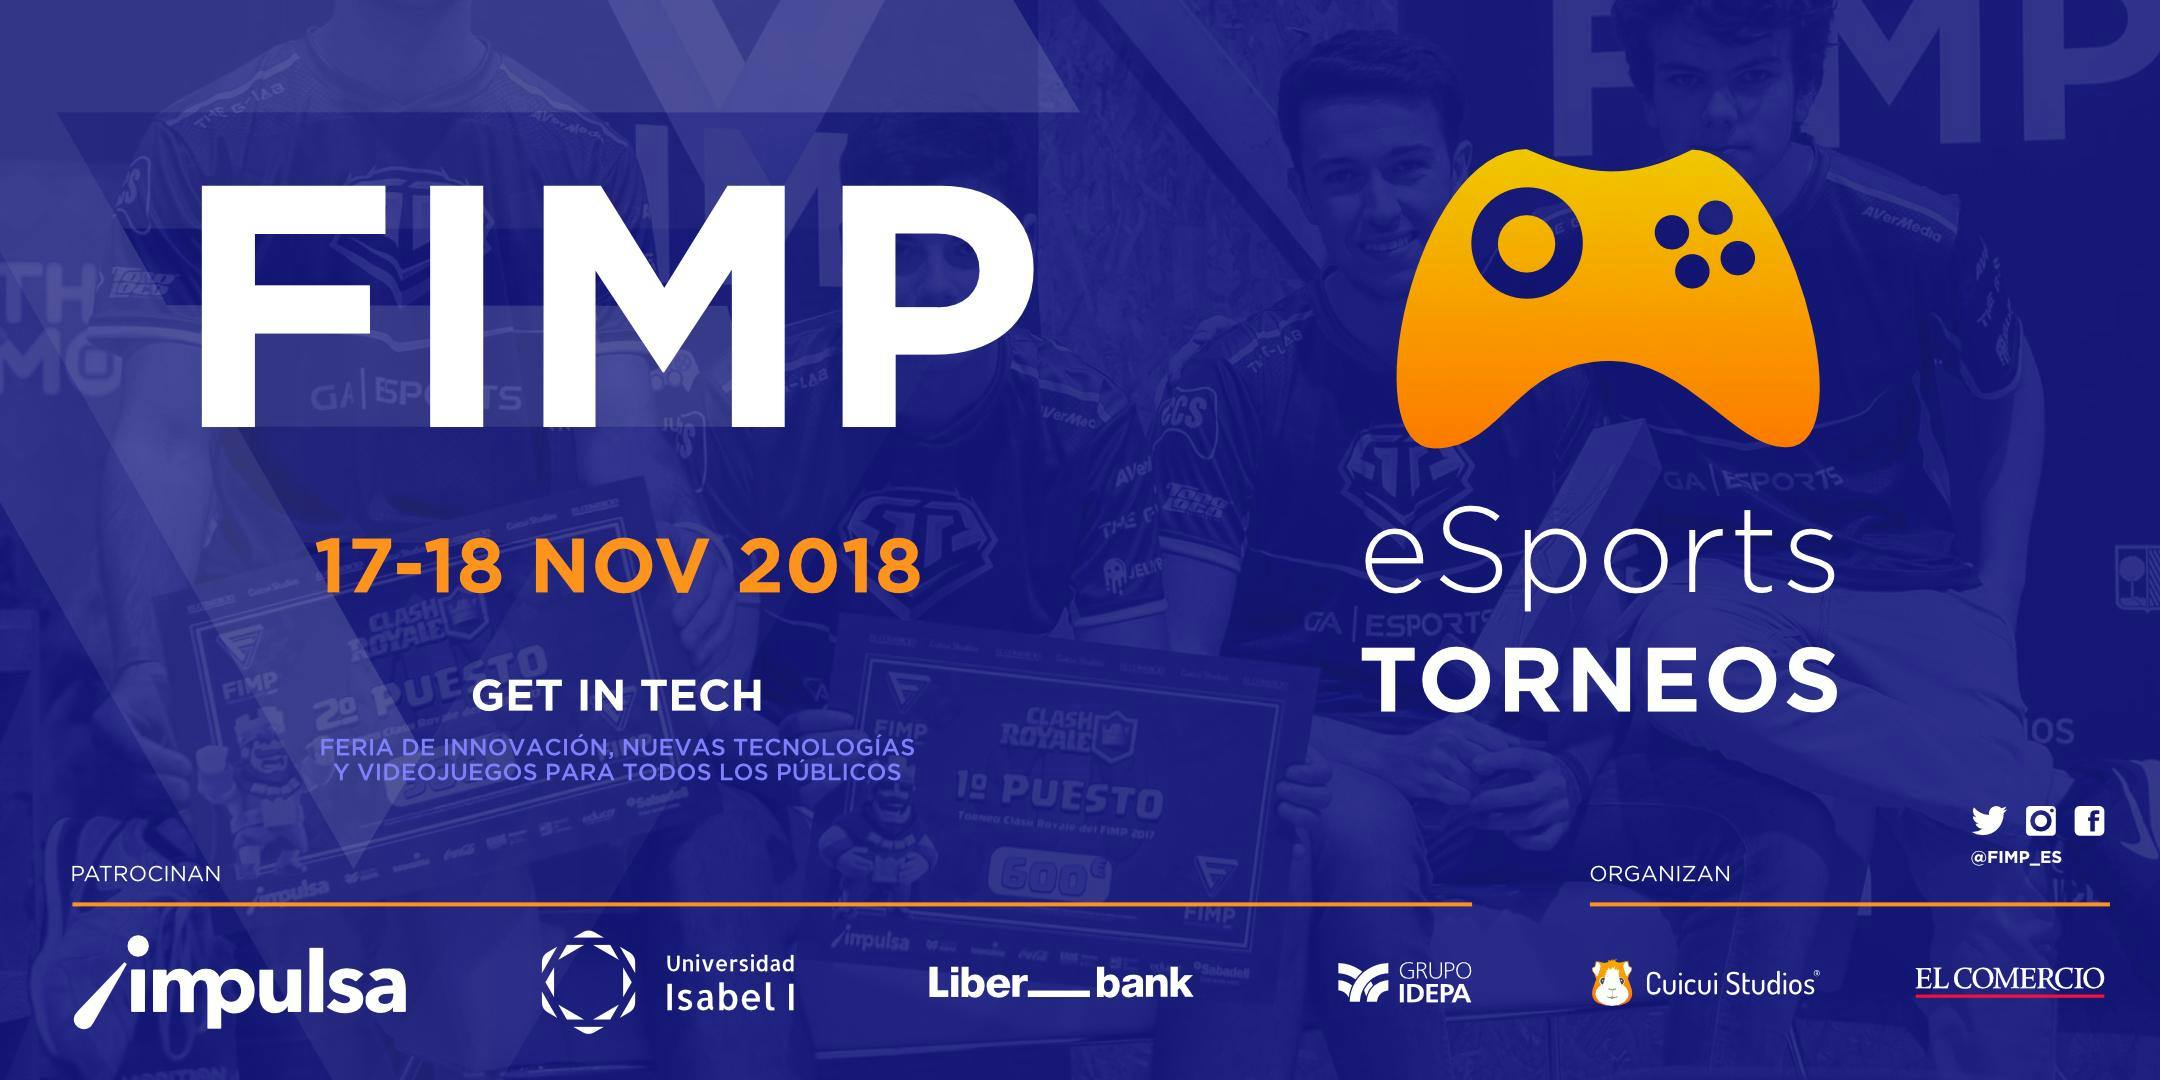 FIMP 2018 - Inscripciones Torneos eSports